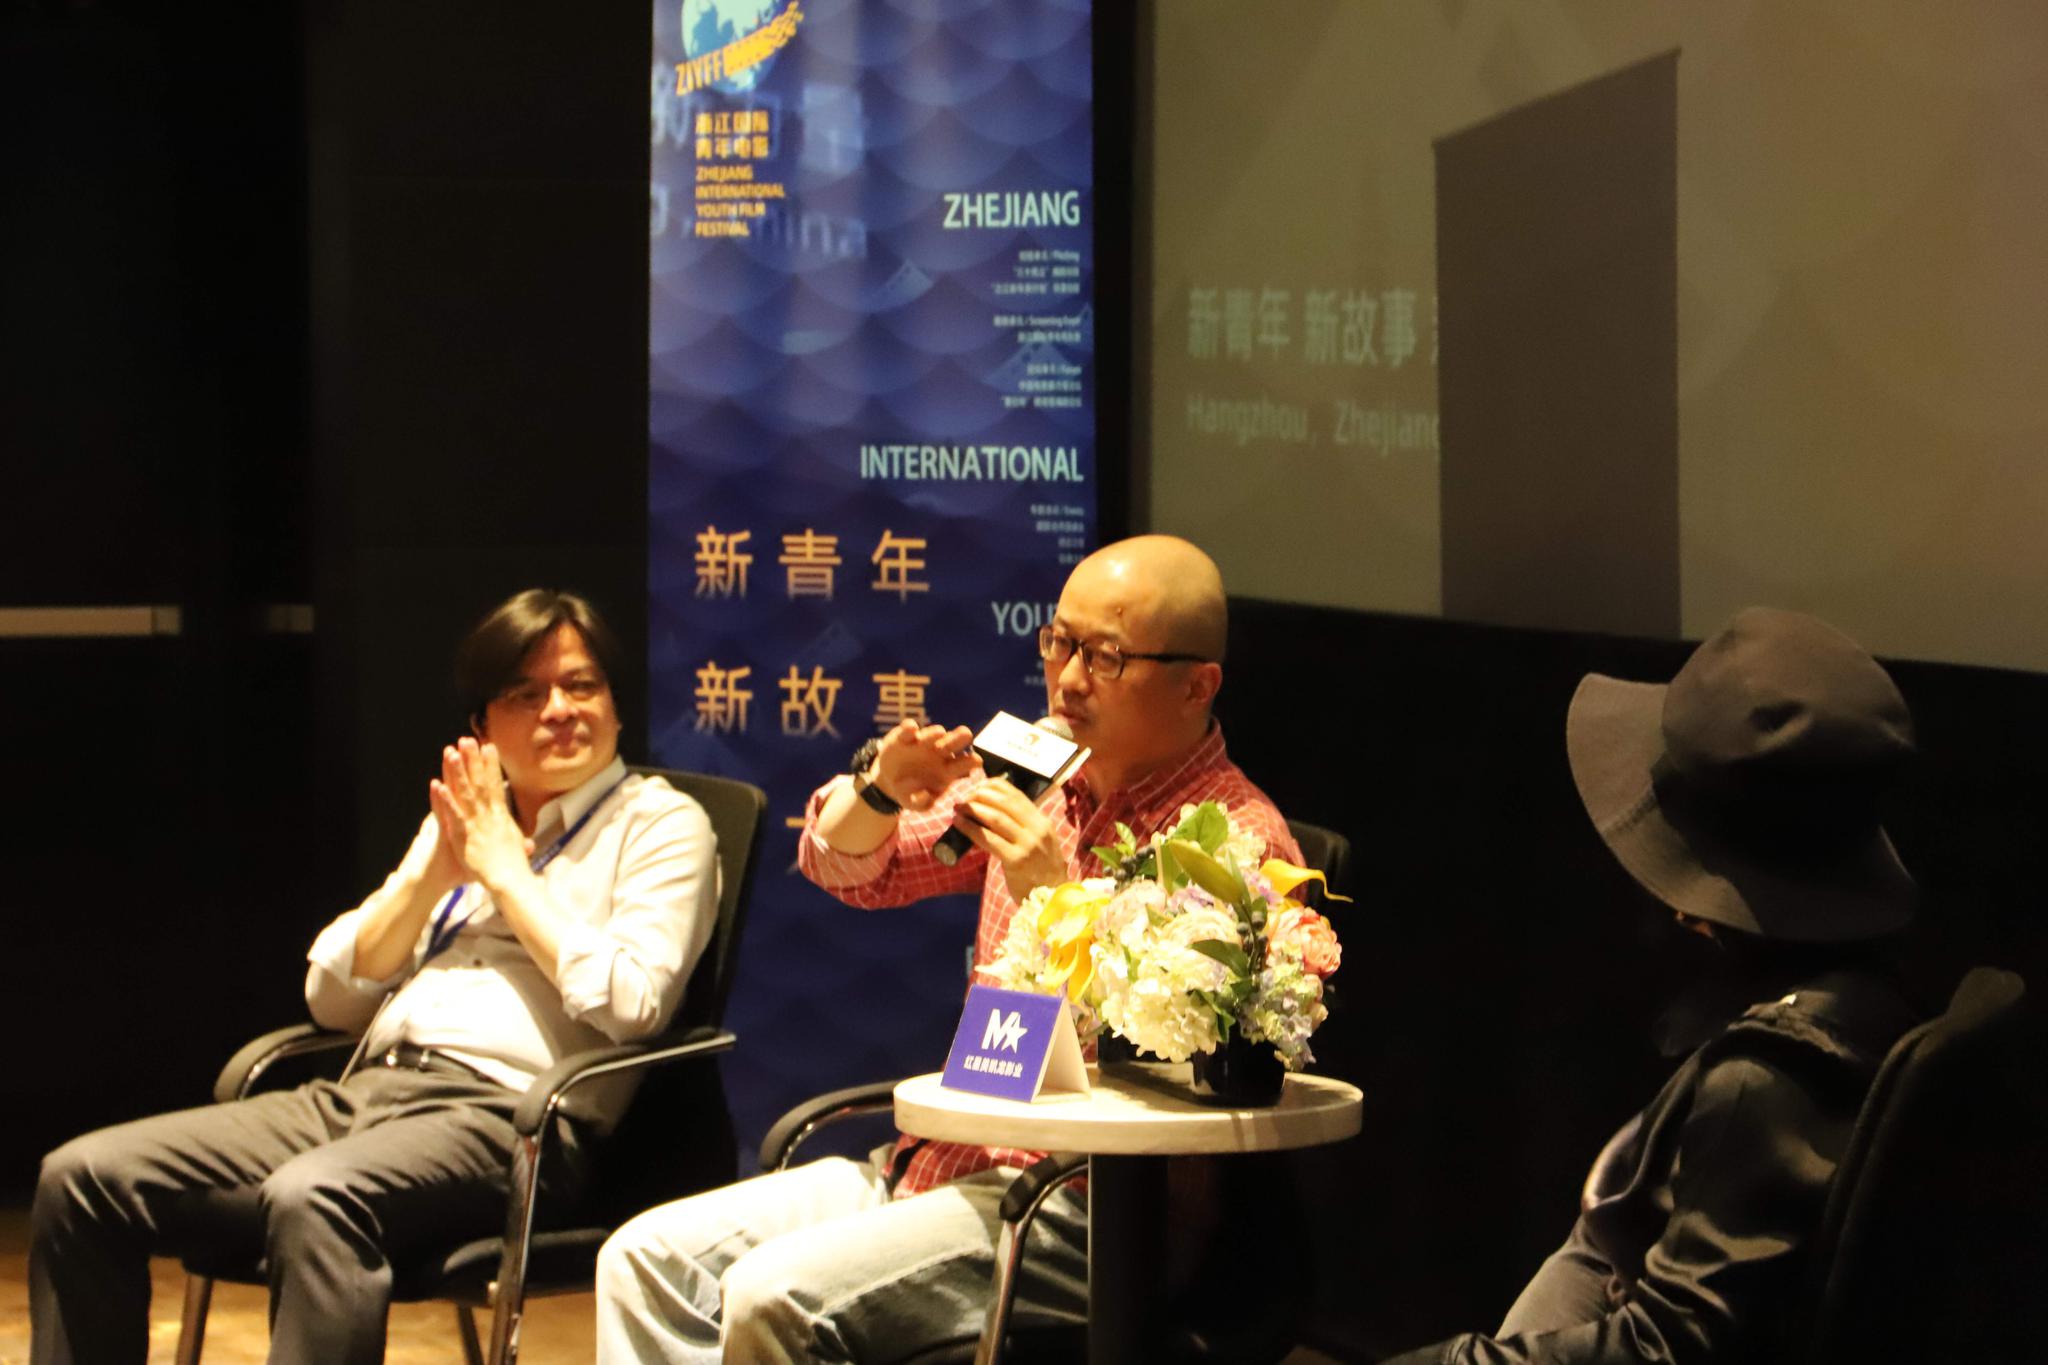 《诗人》浙江国际青年电影周首映获好评宋佳朱亚文